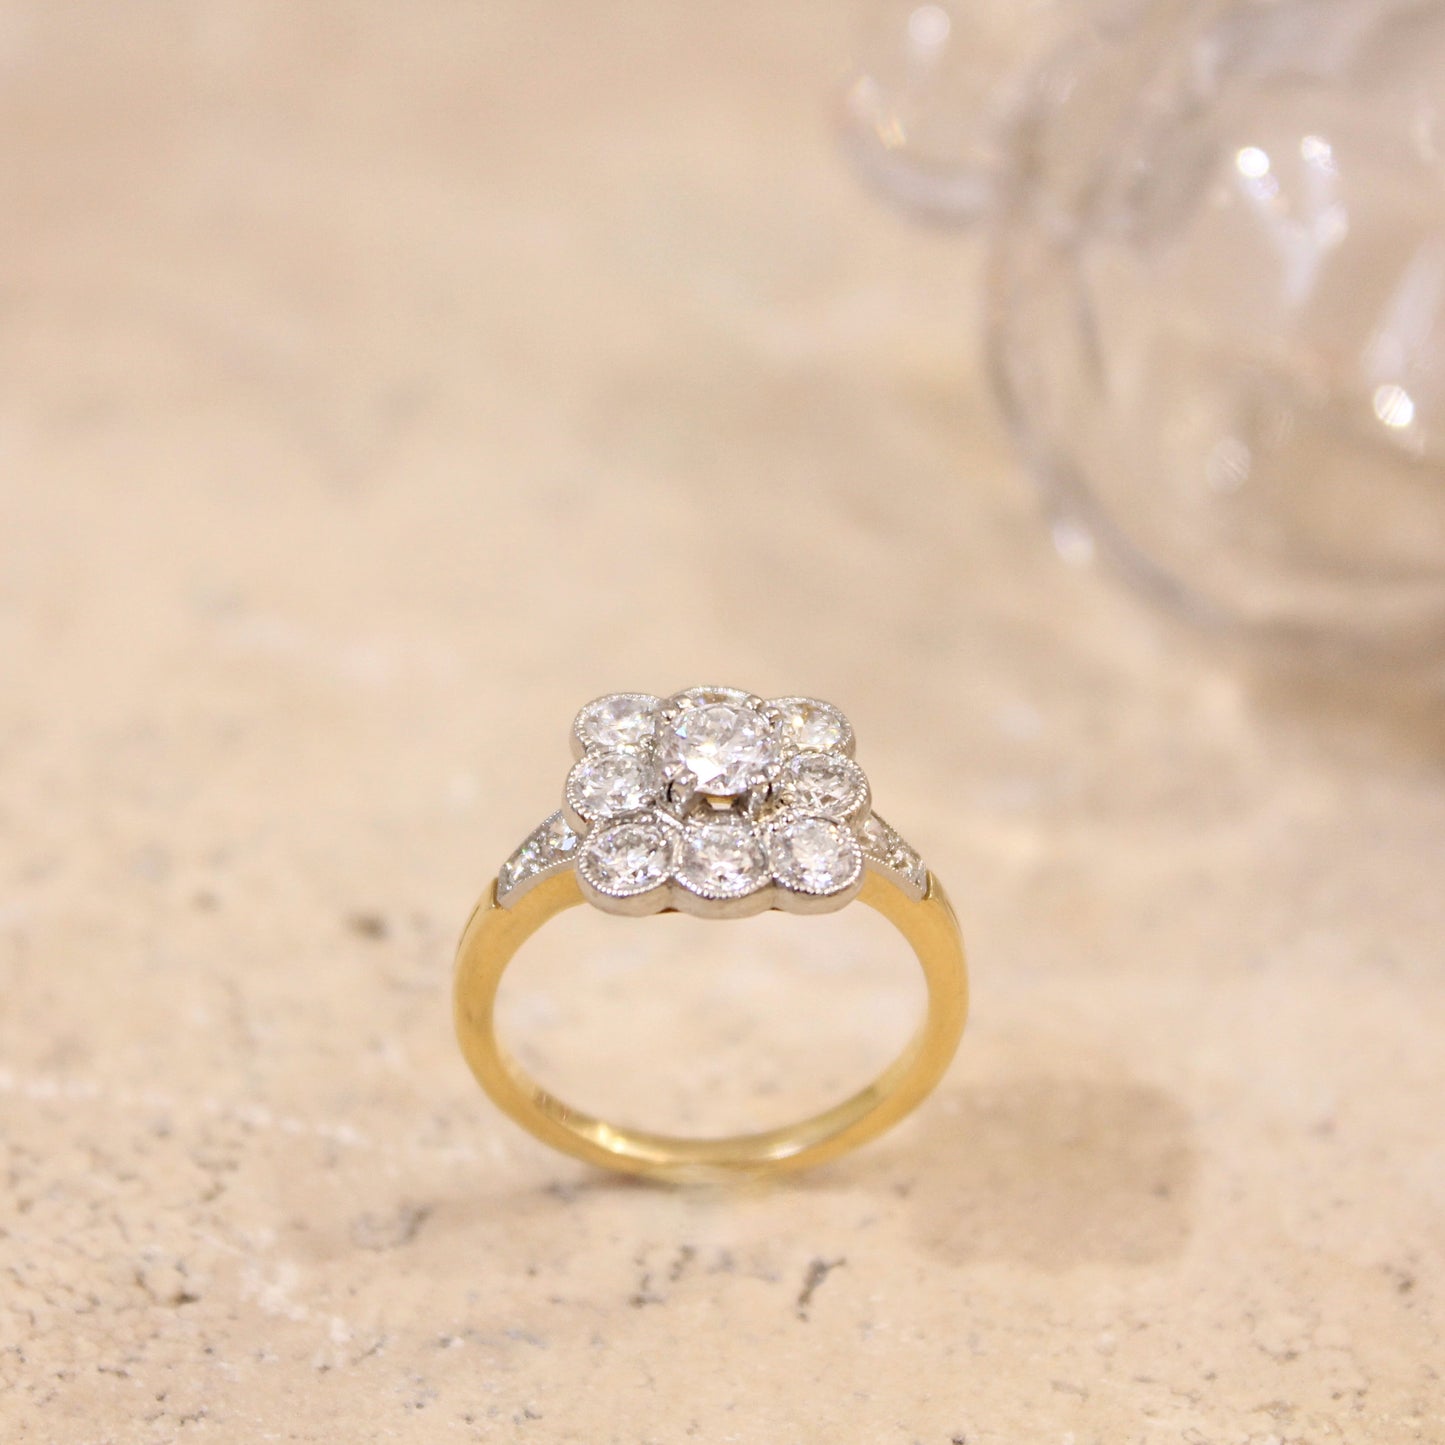 superbe bague marguerite diamants- composée de 9 diamants taille brillant, sertis sur platine - anneau de bague en or jaune 18k